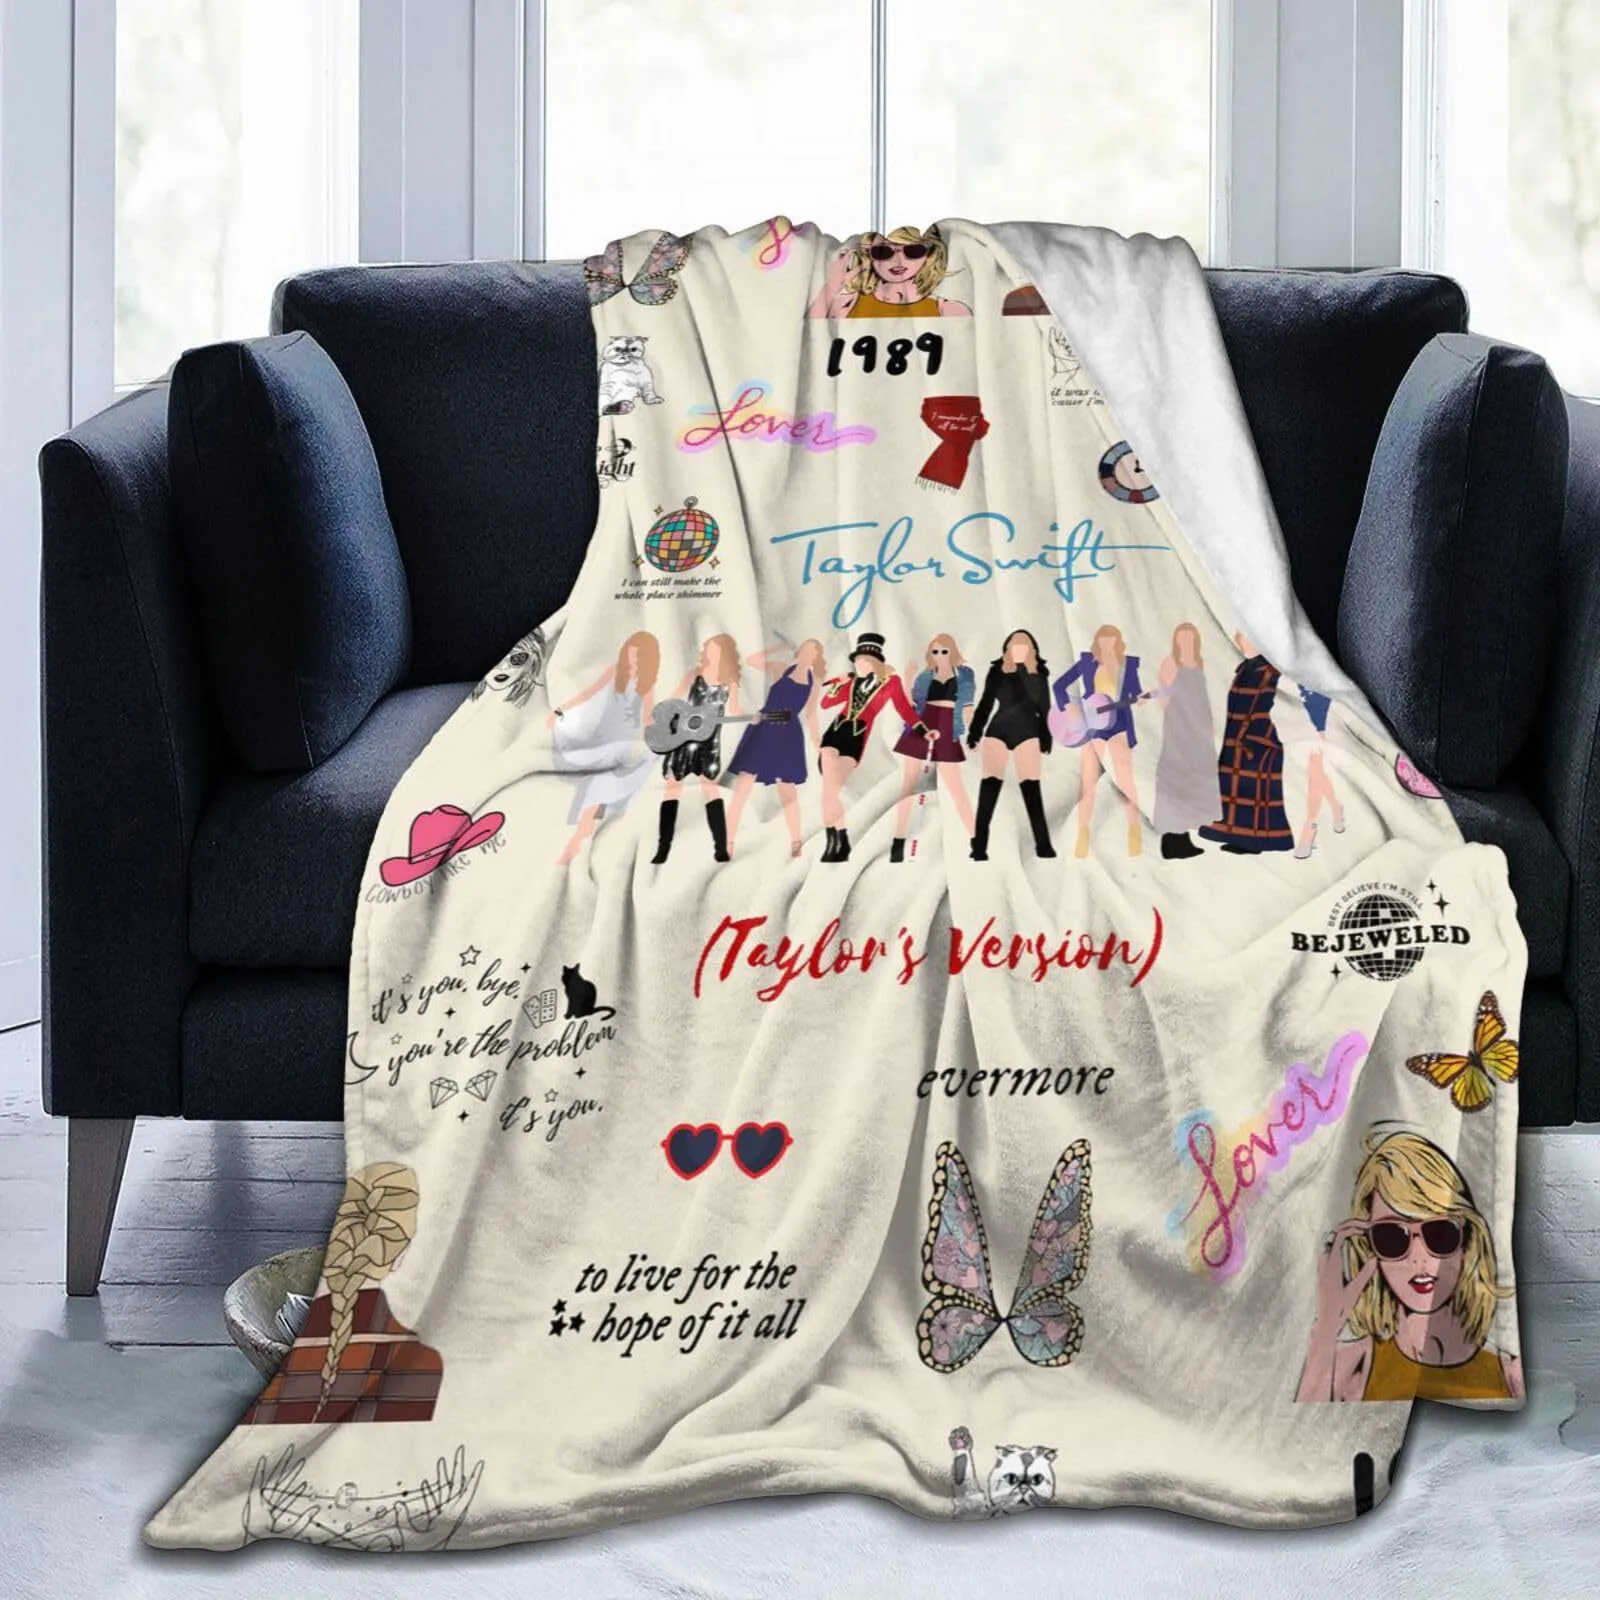 Фланелевое теплое одеяло с рисунком Певицы Тейлор-Свифт, мягкое и удобное одеяло, Дорожное Одеяло, подкладка для кровати, Подарок на День рождения